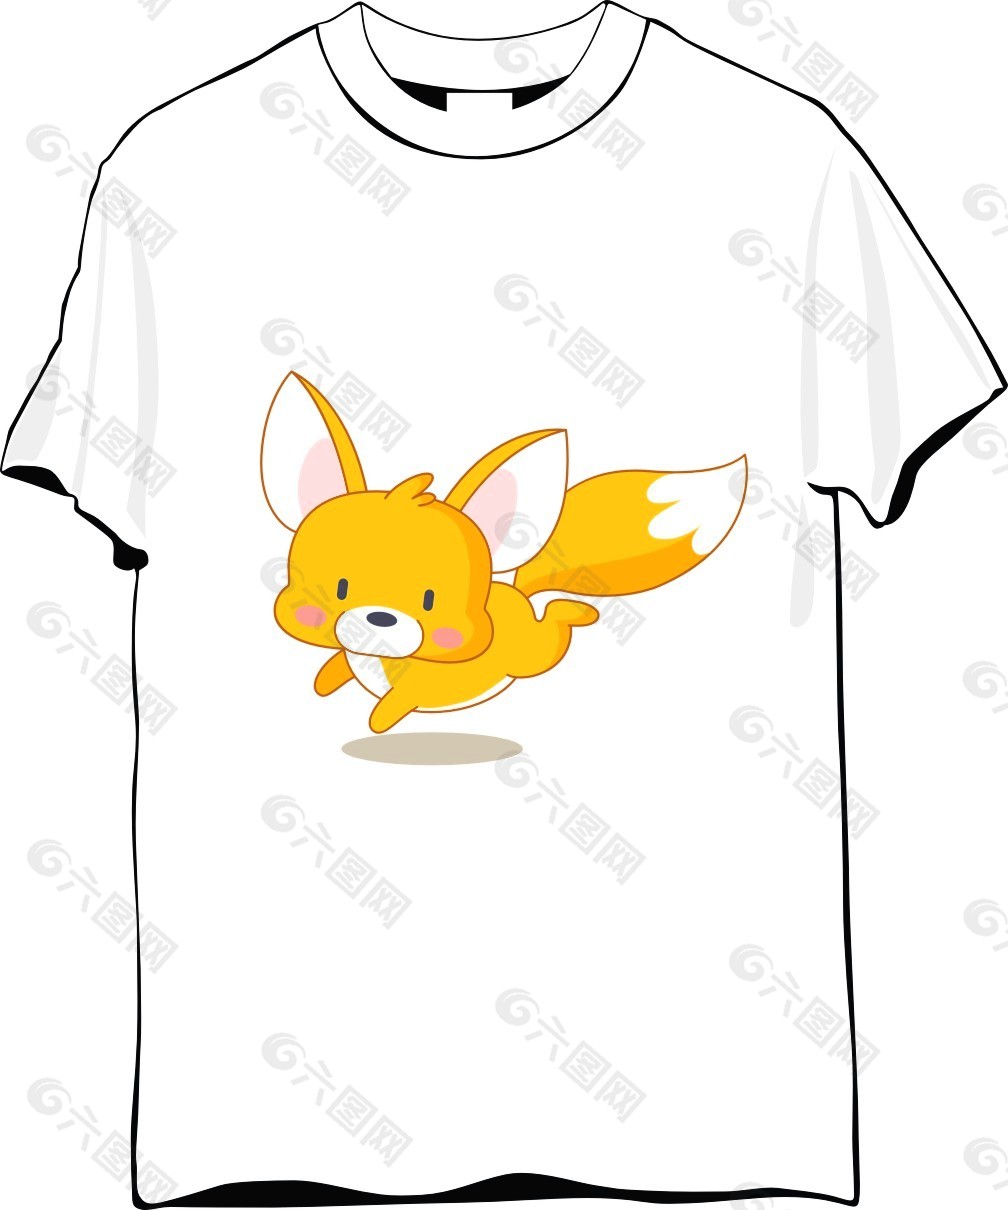 狐狸纪念T恤设计